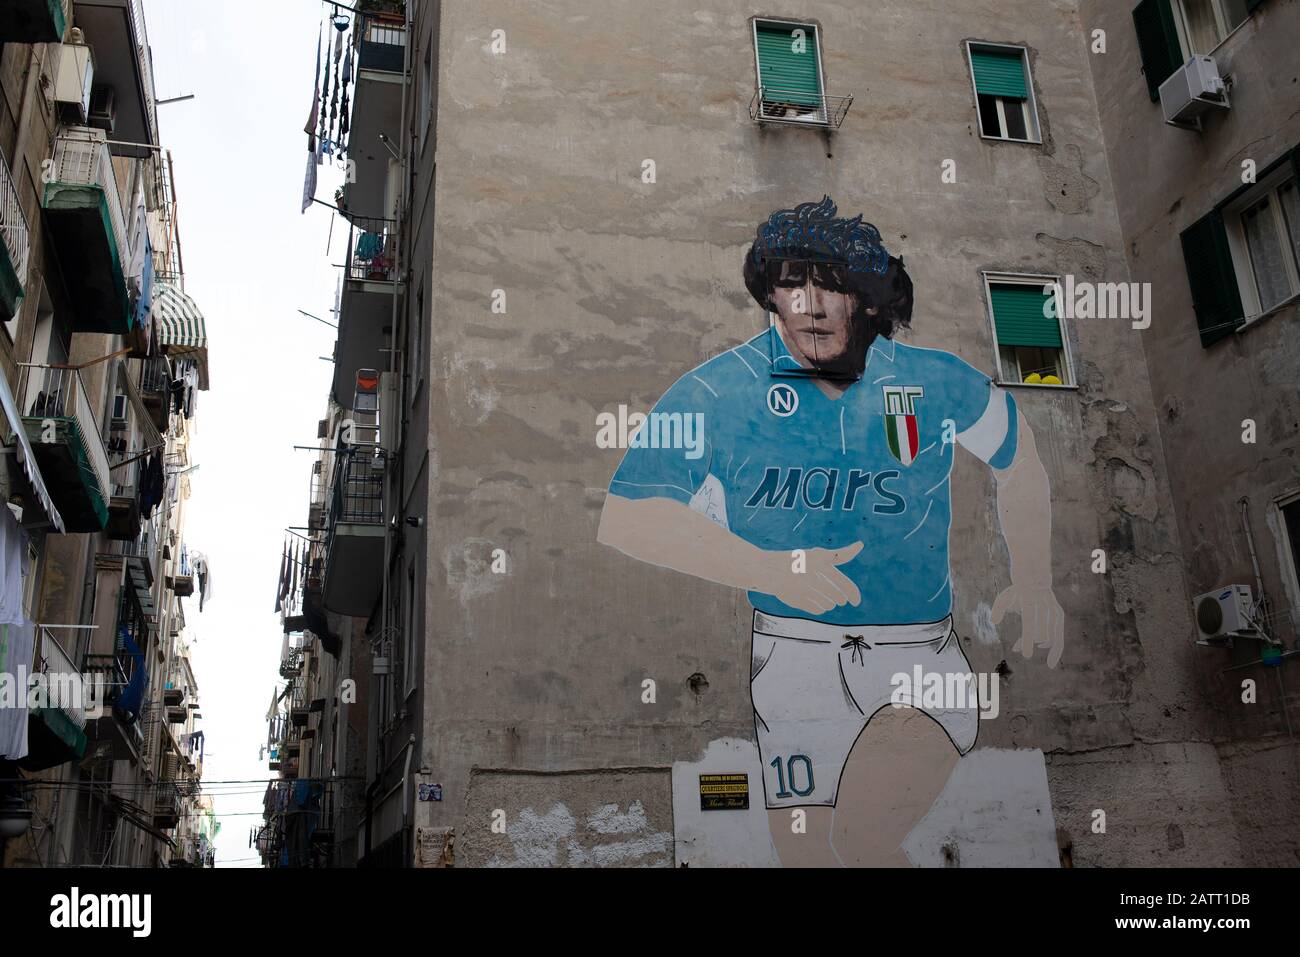 Enorme murale di Diego Maradona nel quartiere spagnolo di Napoli, Italia Foto Stock